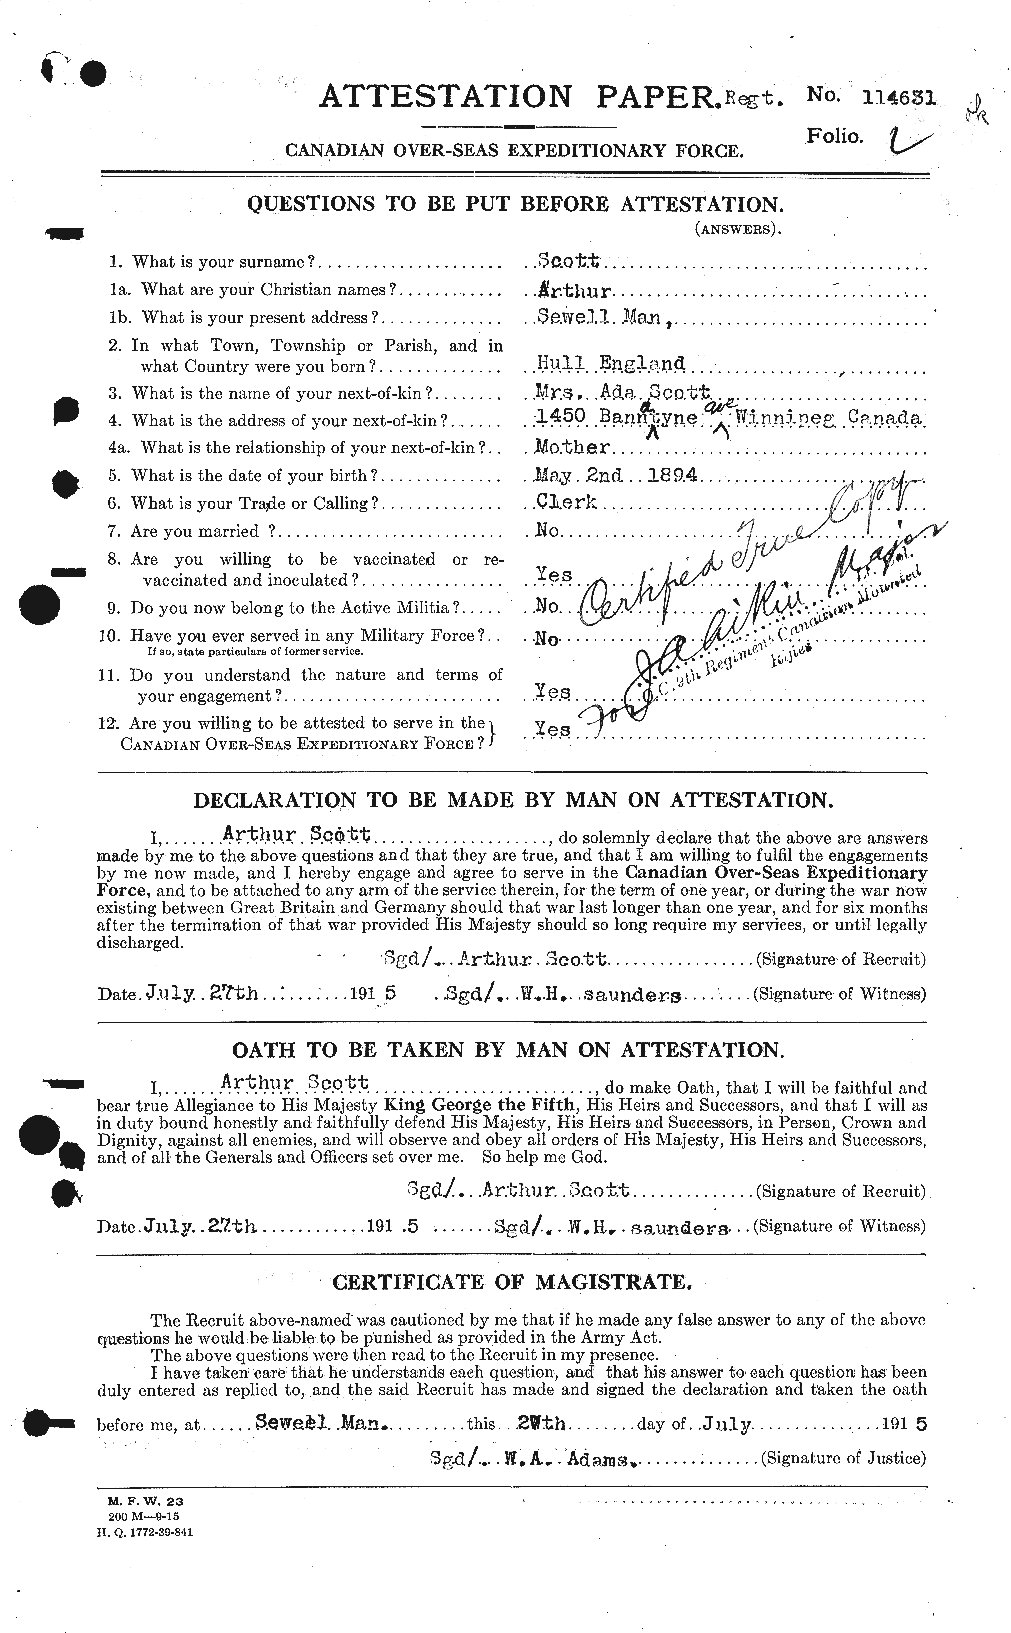 Dossiers du Personnel de la Première Guerre mondiale - CEC 086416a